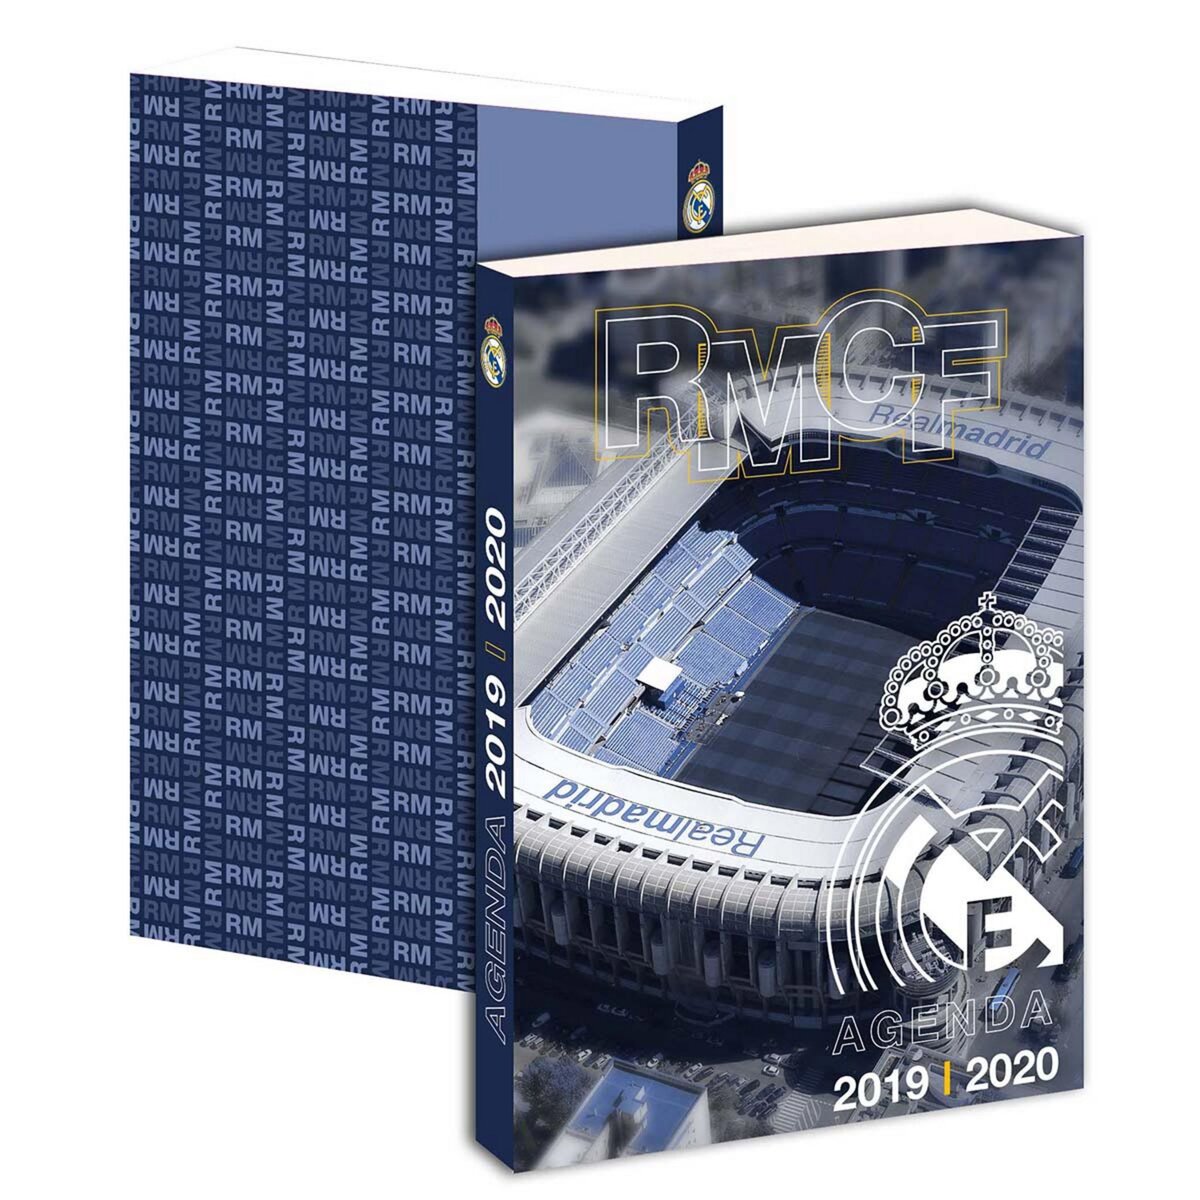  Agenda scolaire journalier garçon 12x17cm - couverture cartonnée souple - bleu marine photo stade Real Madrid 2019-2020